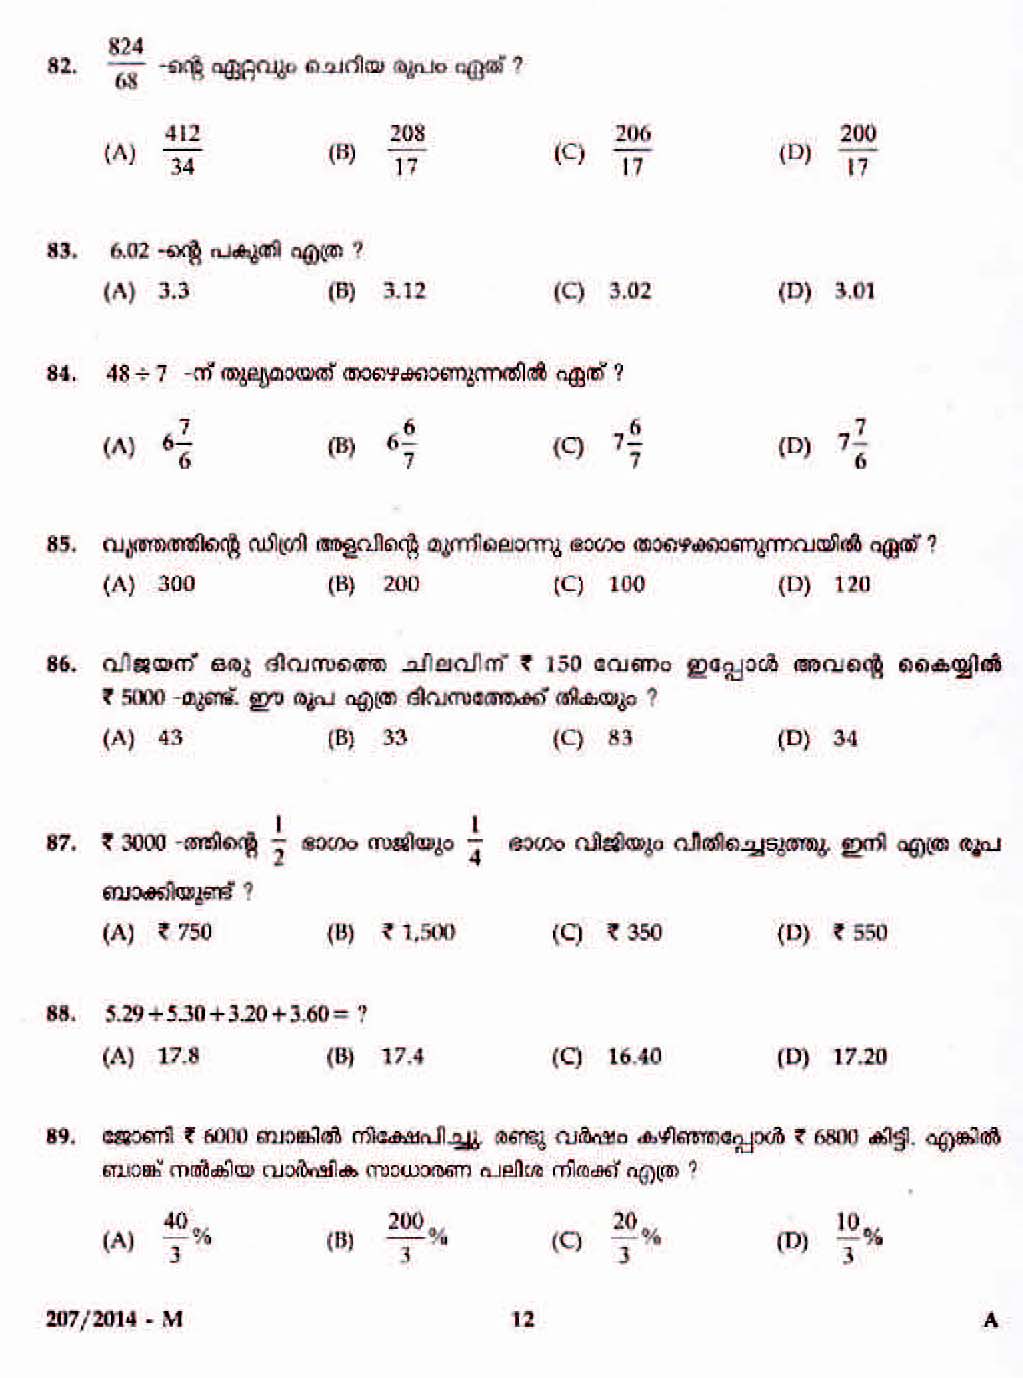 Kerala Last Grade Servants Exam 2014 Question Paper Code 2072014 M 10